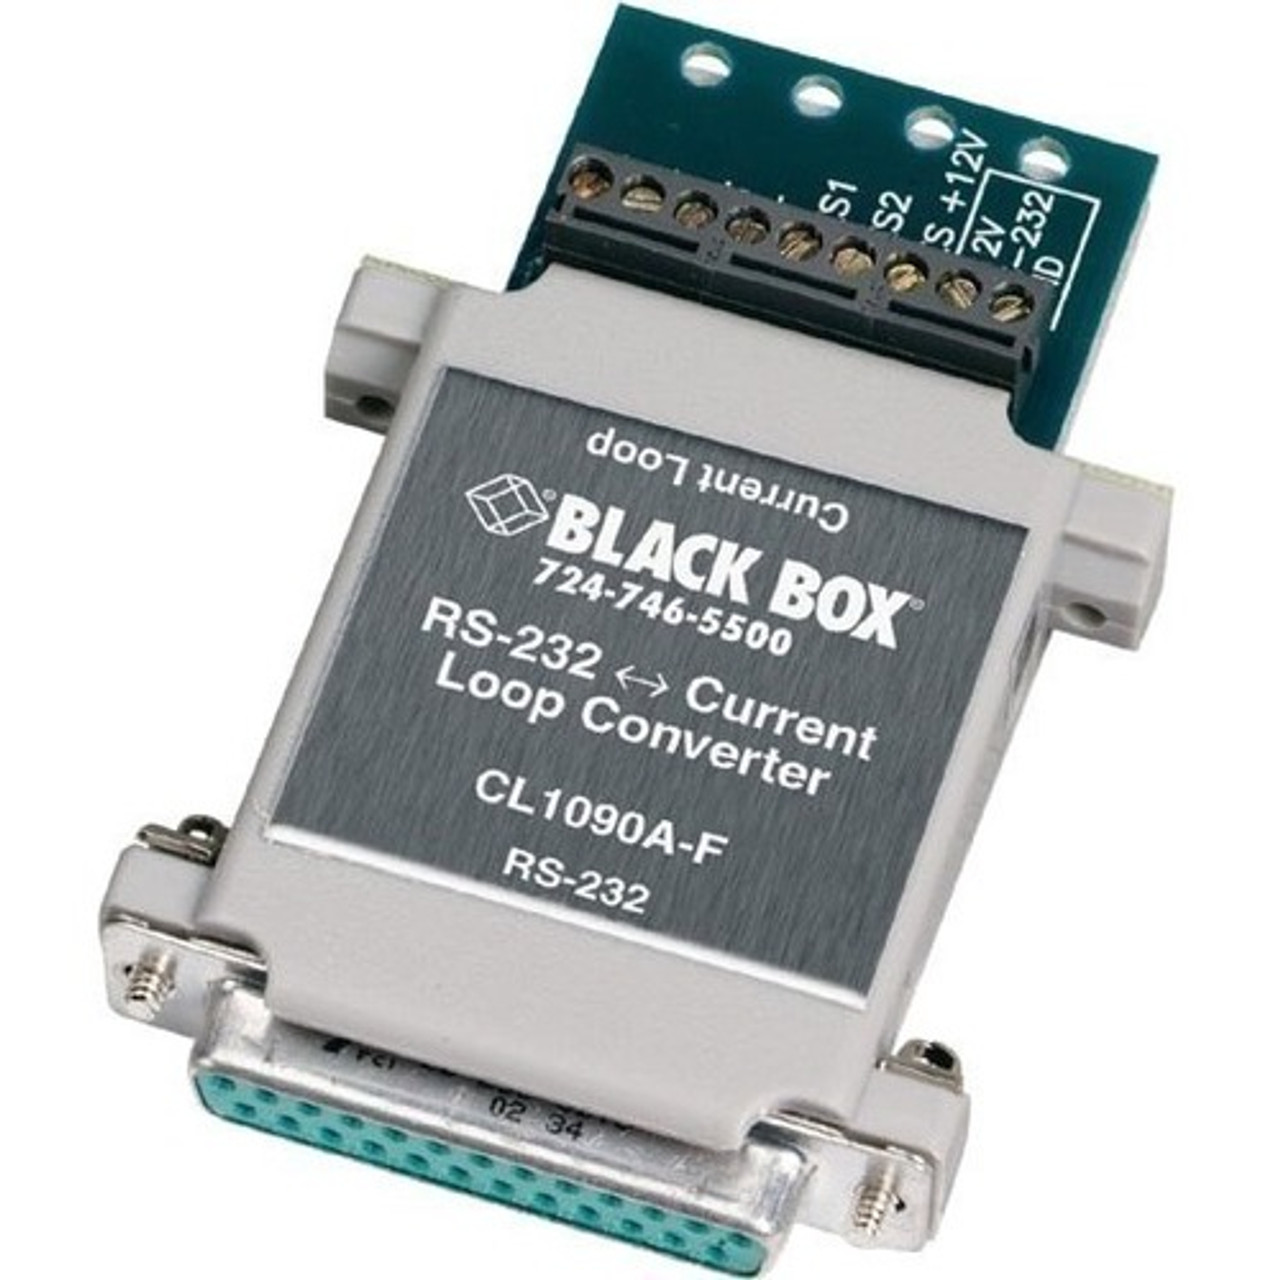 Black Box CL1090A-F-US